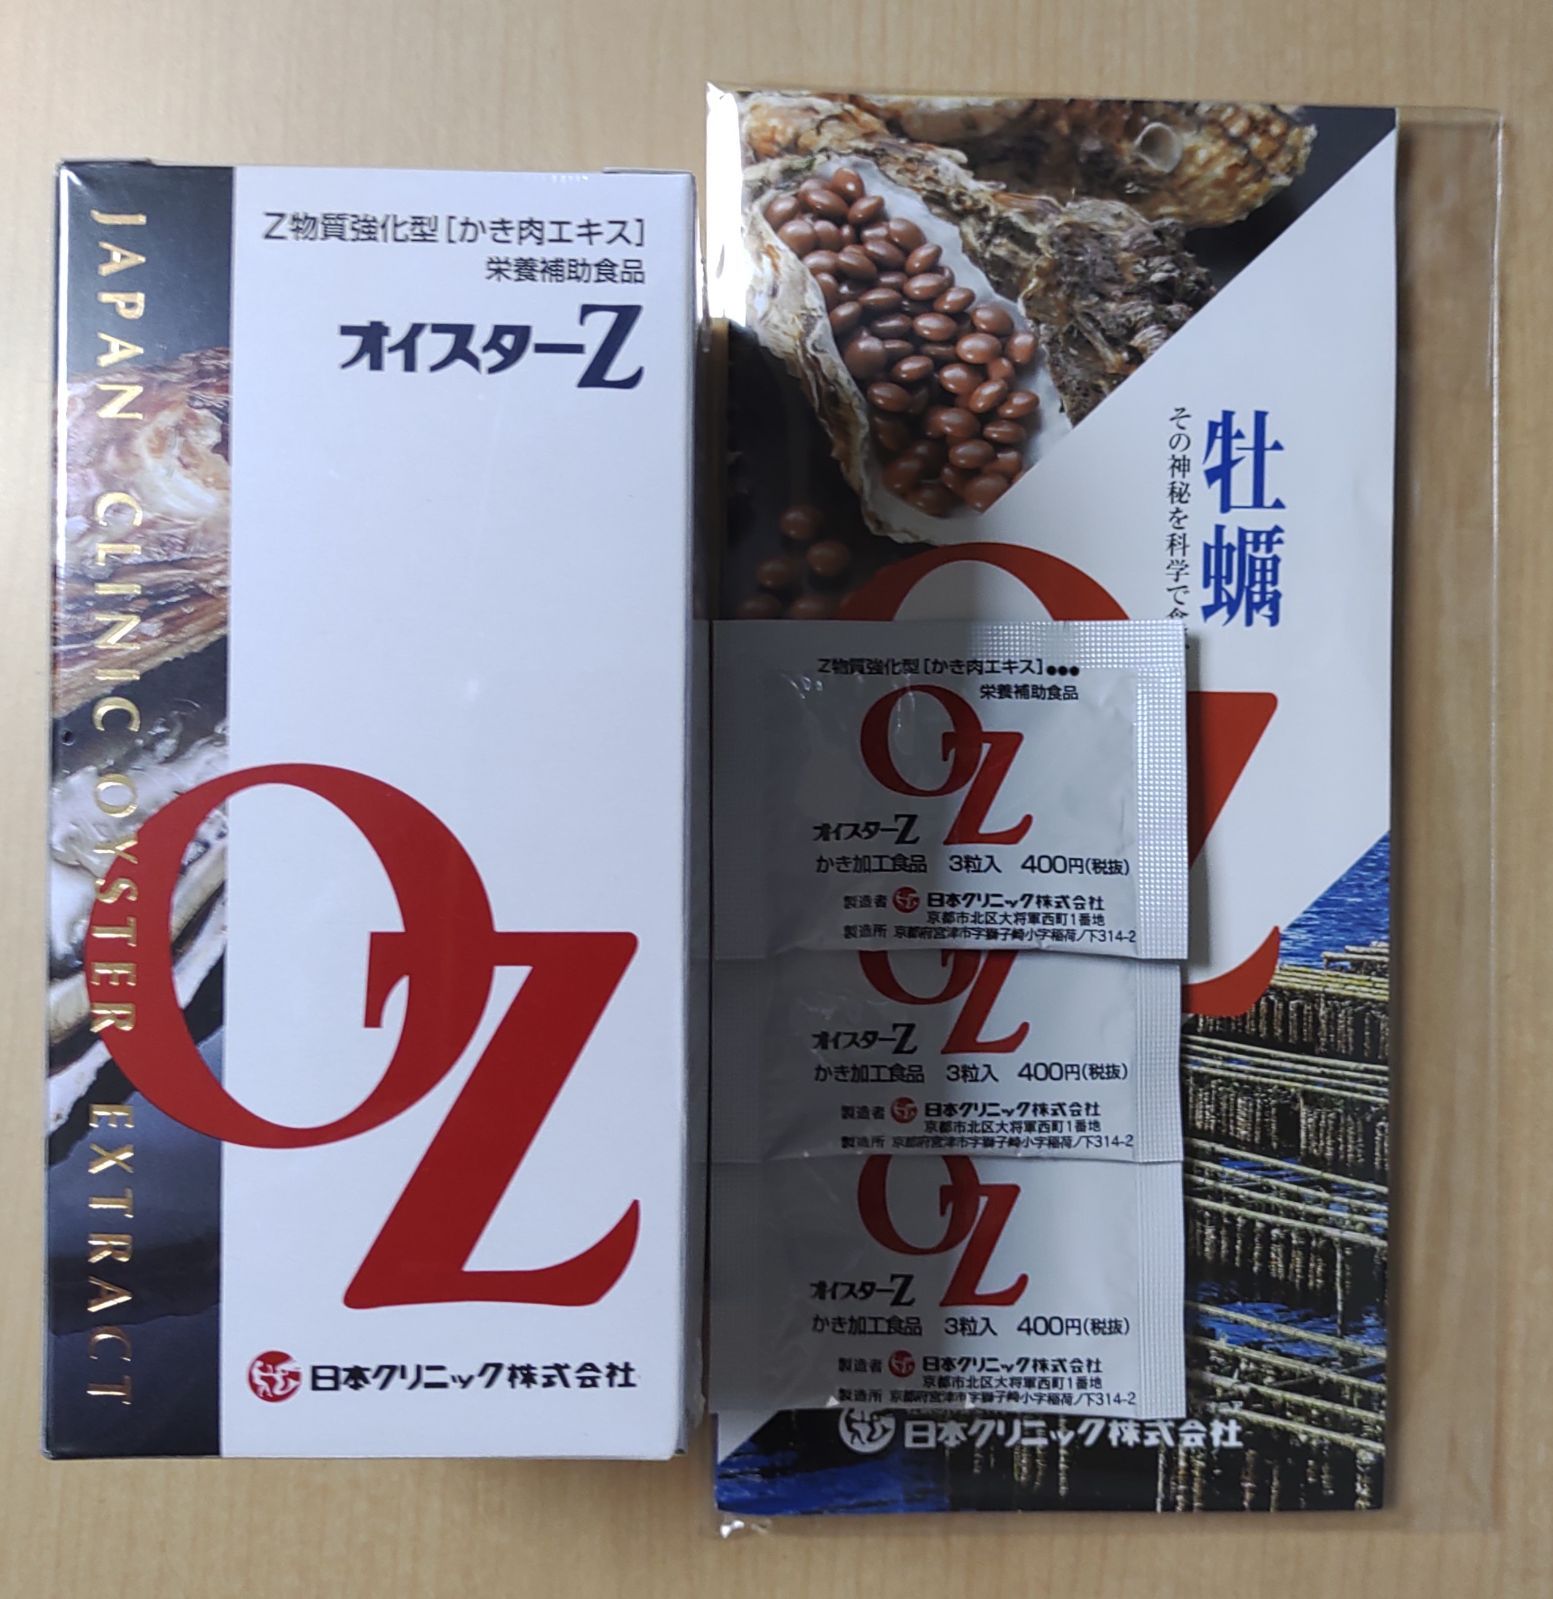 いつもお世話になっておりますオイスターZ500粒牡蠣肉エキス 日本クリニック株式会社